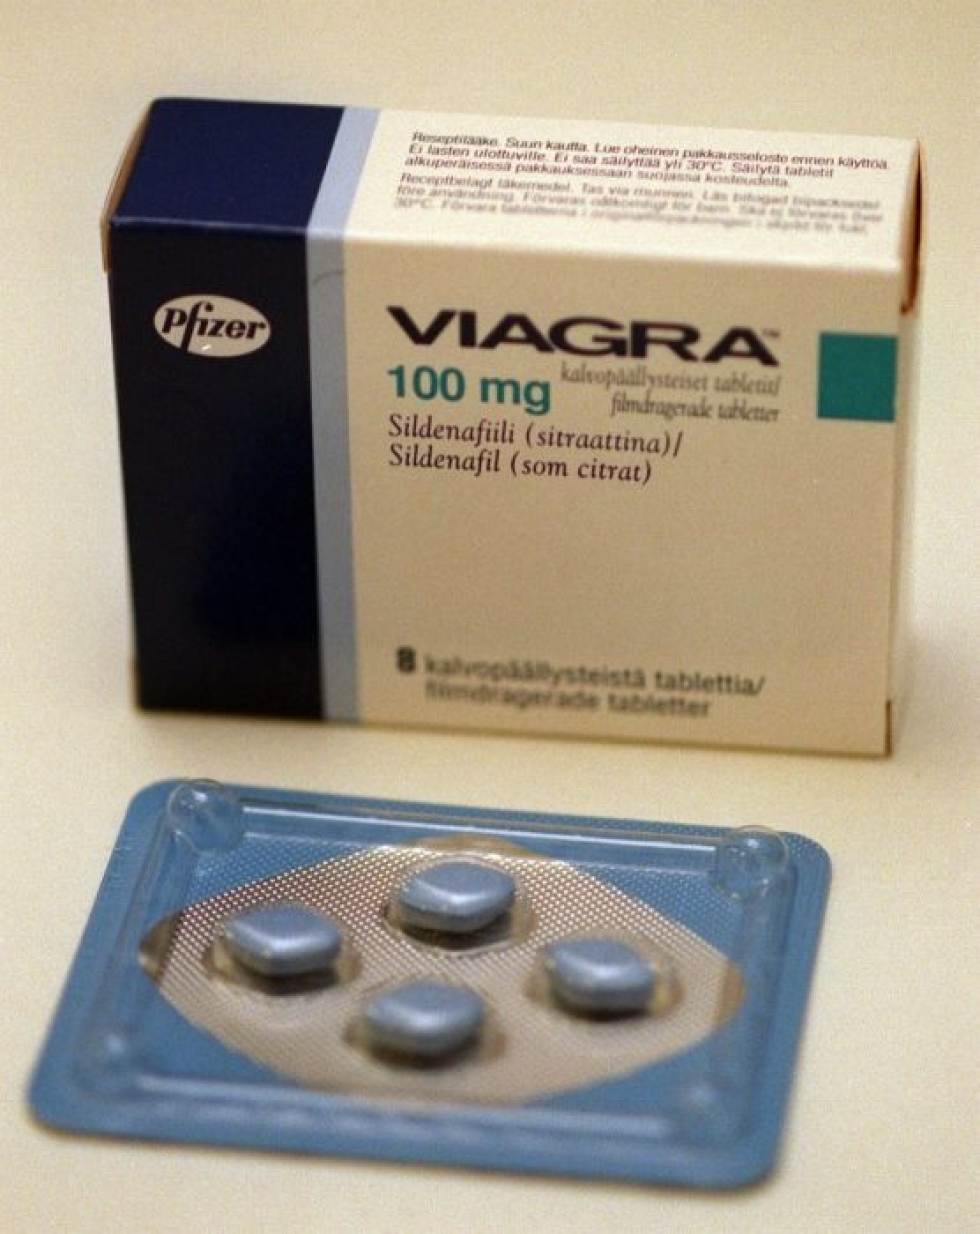 Potenssilääke Viagran paketti. LEHTIKUVA / KIMMO MÄNTYLÄ